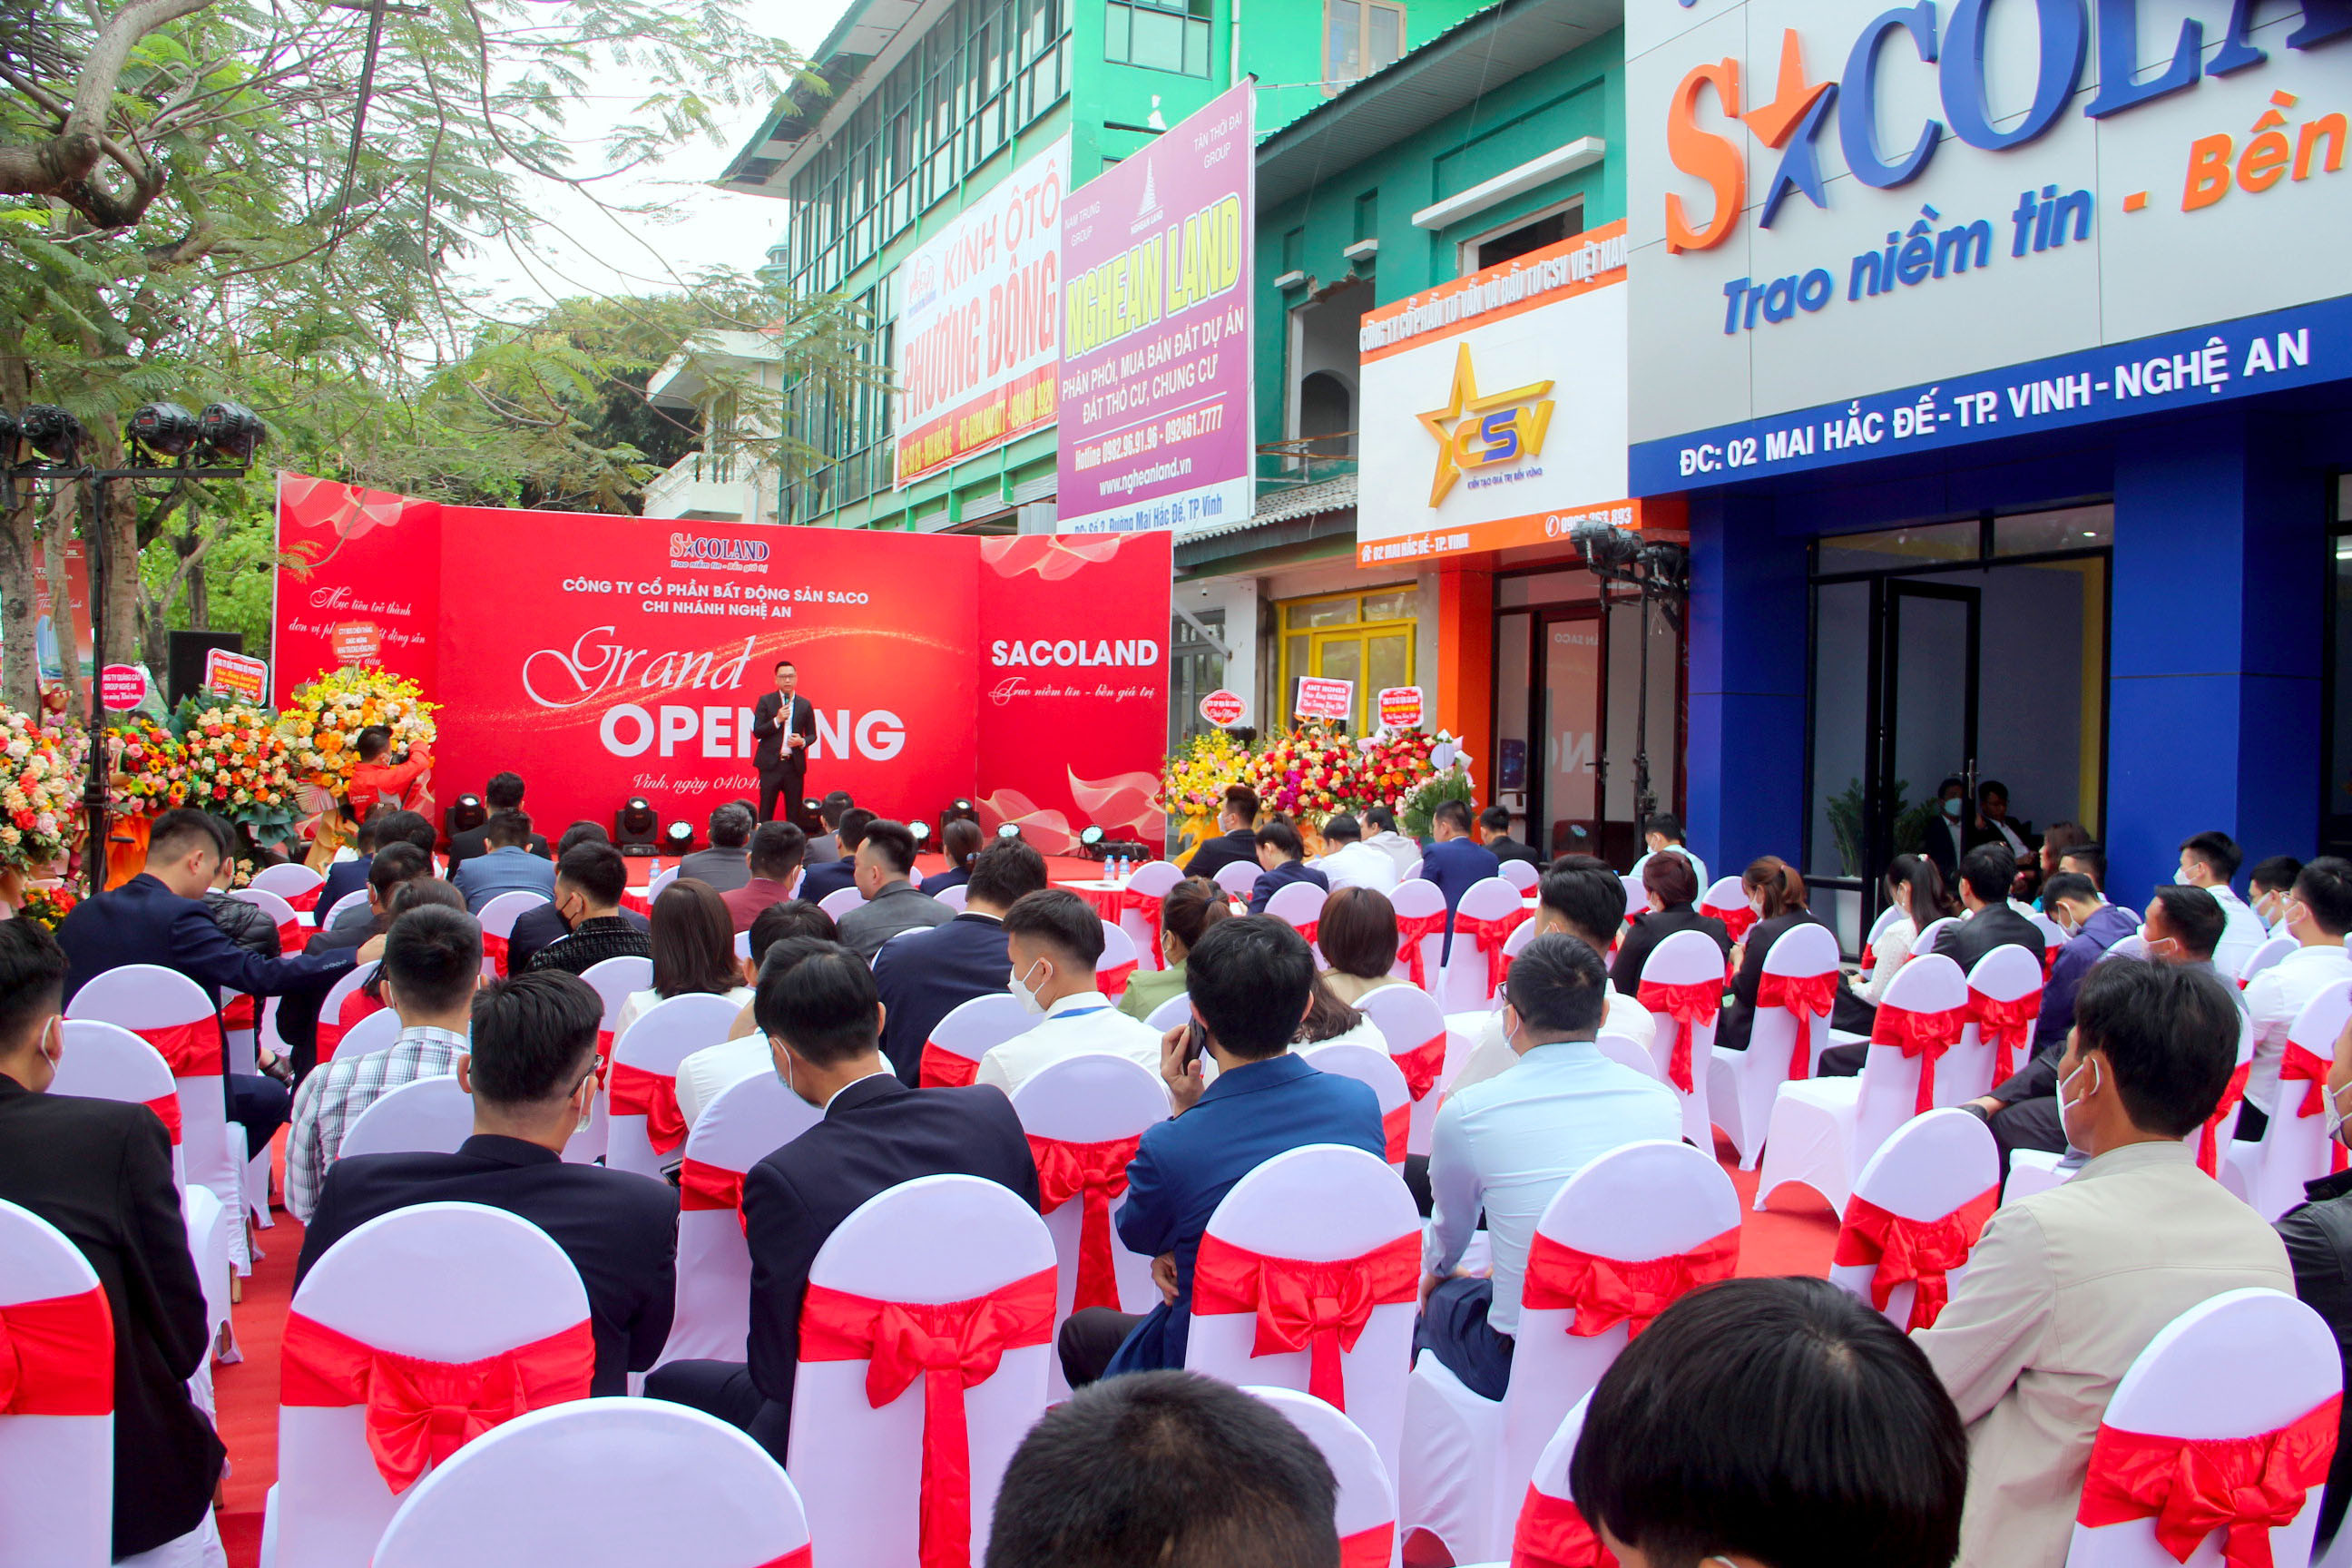 Sacoland chính thức khai trương chi nhánh tại Nghệ An sáng 4/4. Ảnh: Q.A